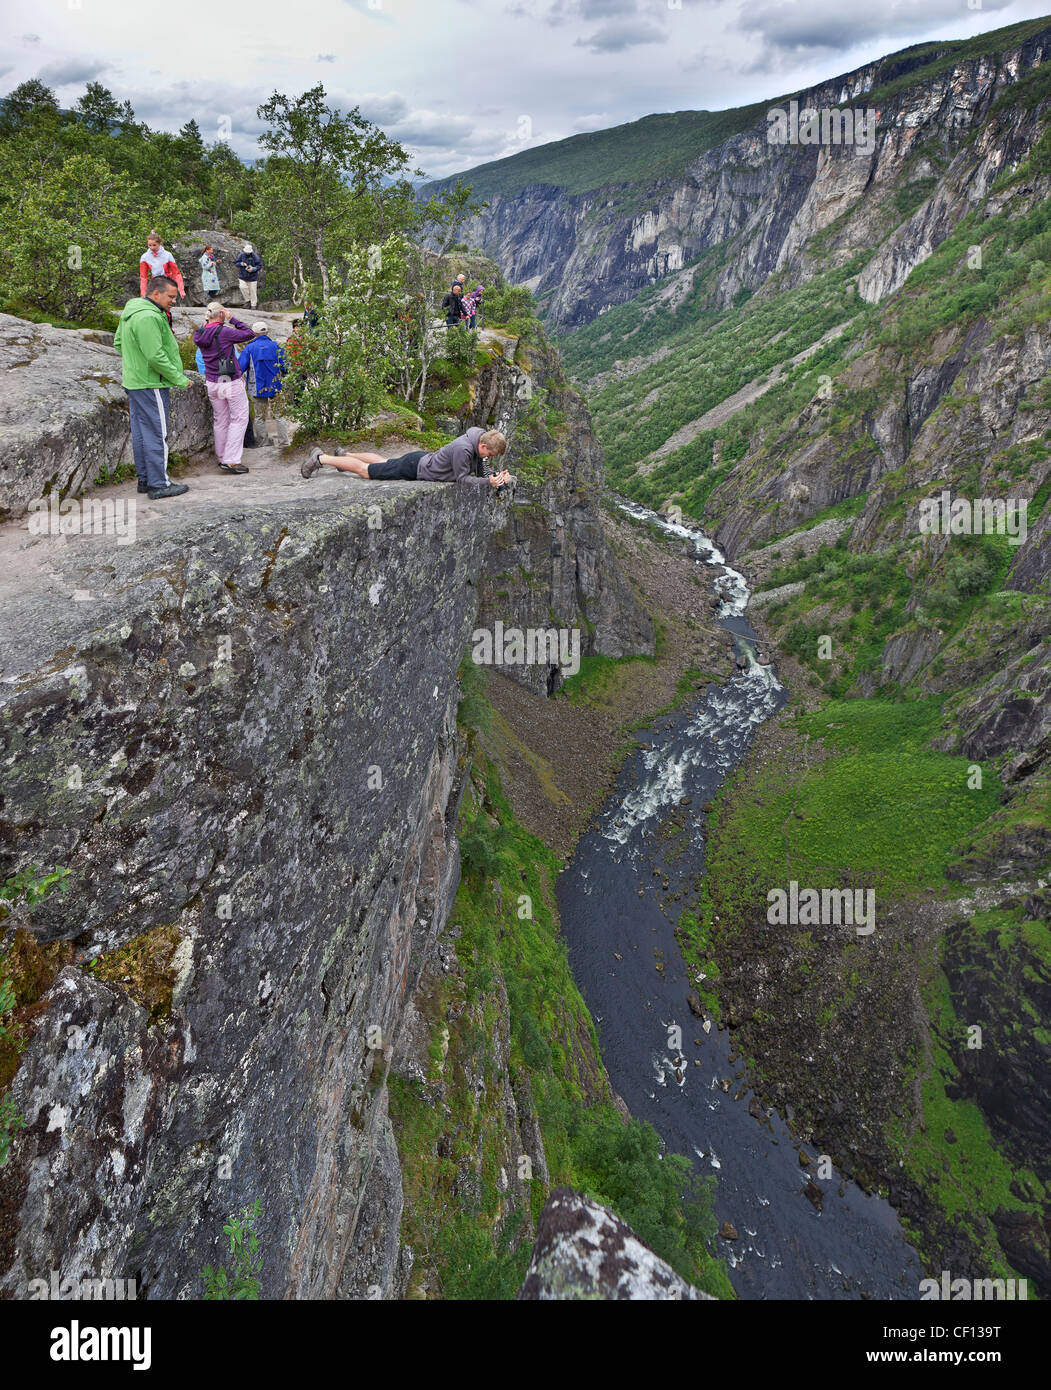 Les touristes à la recherche sur le bord escarpé, Vorningsfossen cascade, Eidfjord, Hordaland, Norvège Banque D'Images